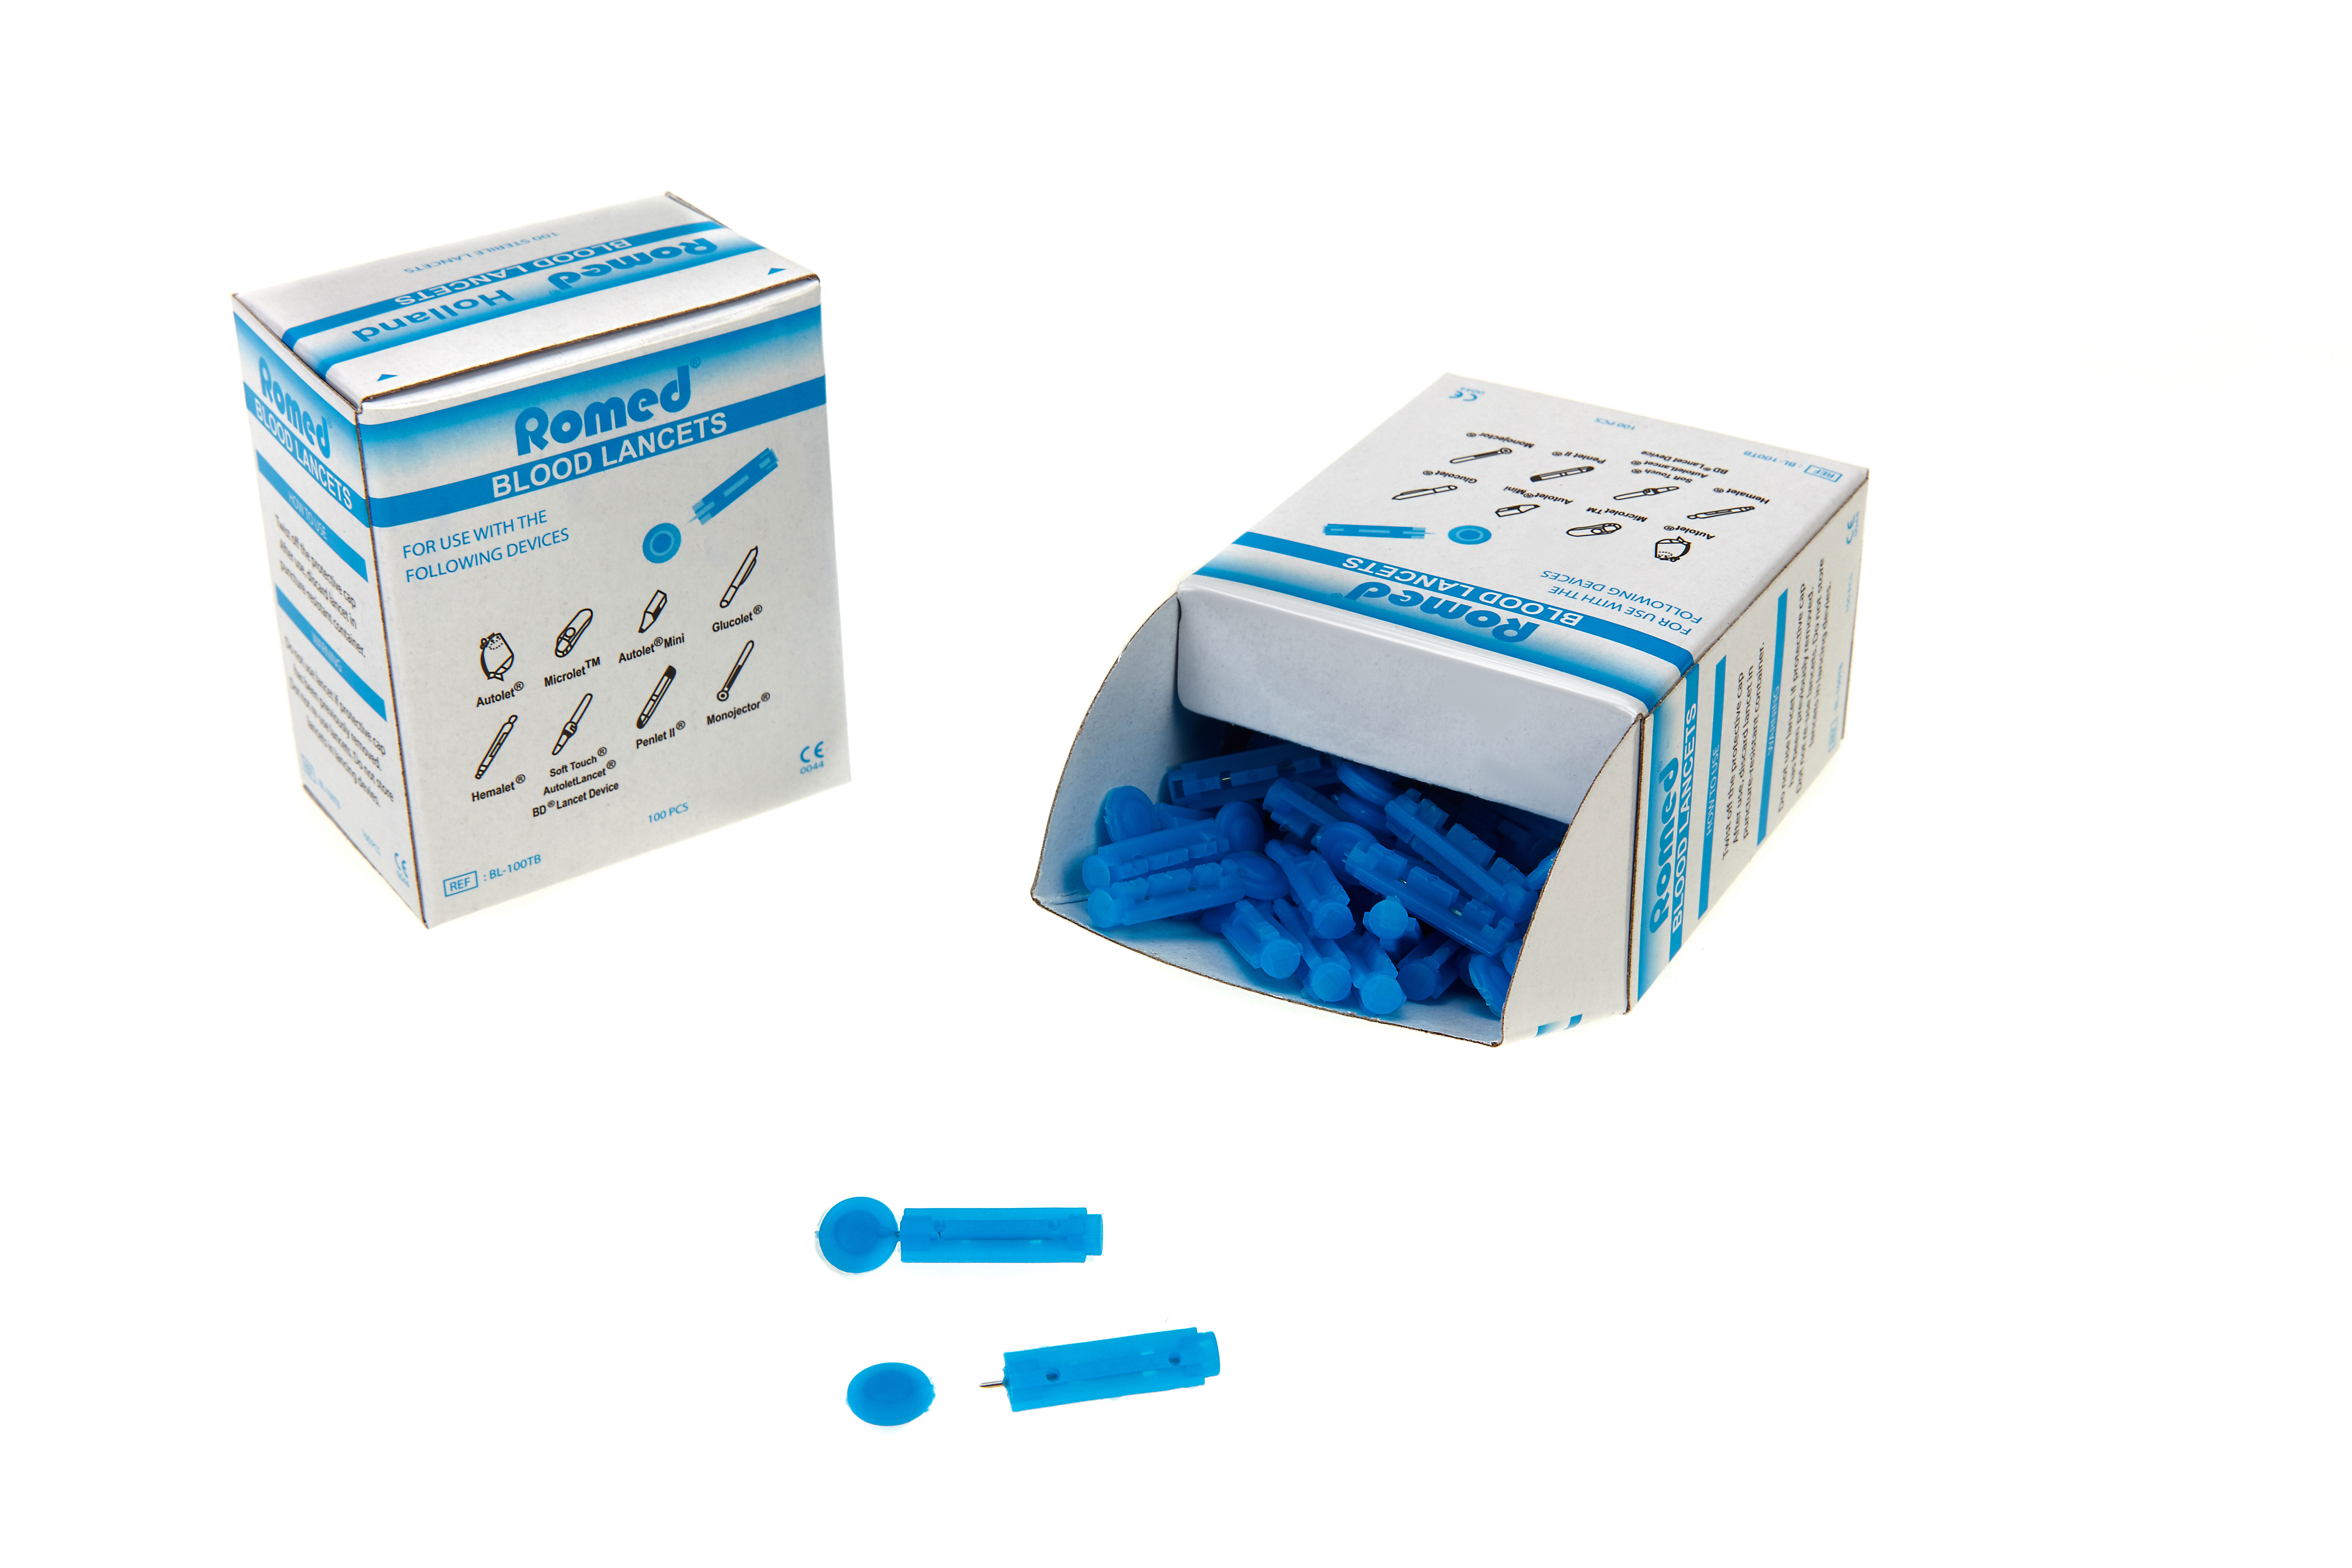 BL-100TB Romed Blutlanzetten mit Tri-bevel, fein, blau, steril pro Stück, 100 Stück in einer Schachtel, 5.000 Stück in einer Umschachtel, 4 x 5.000 Stück = 20.000 Stück im Karton.